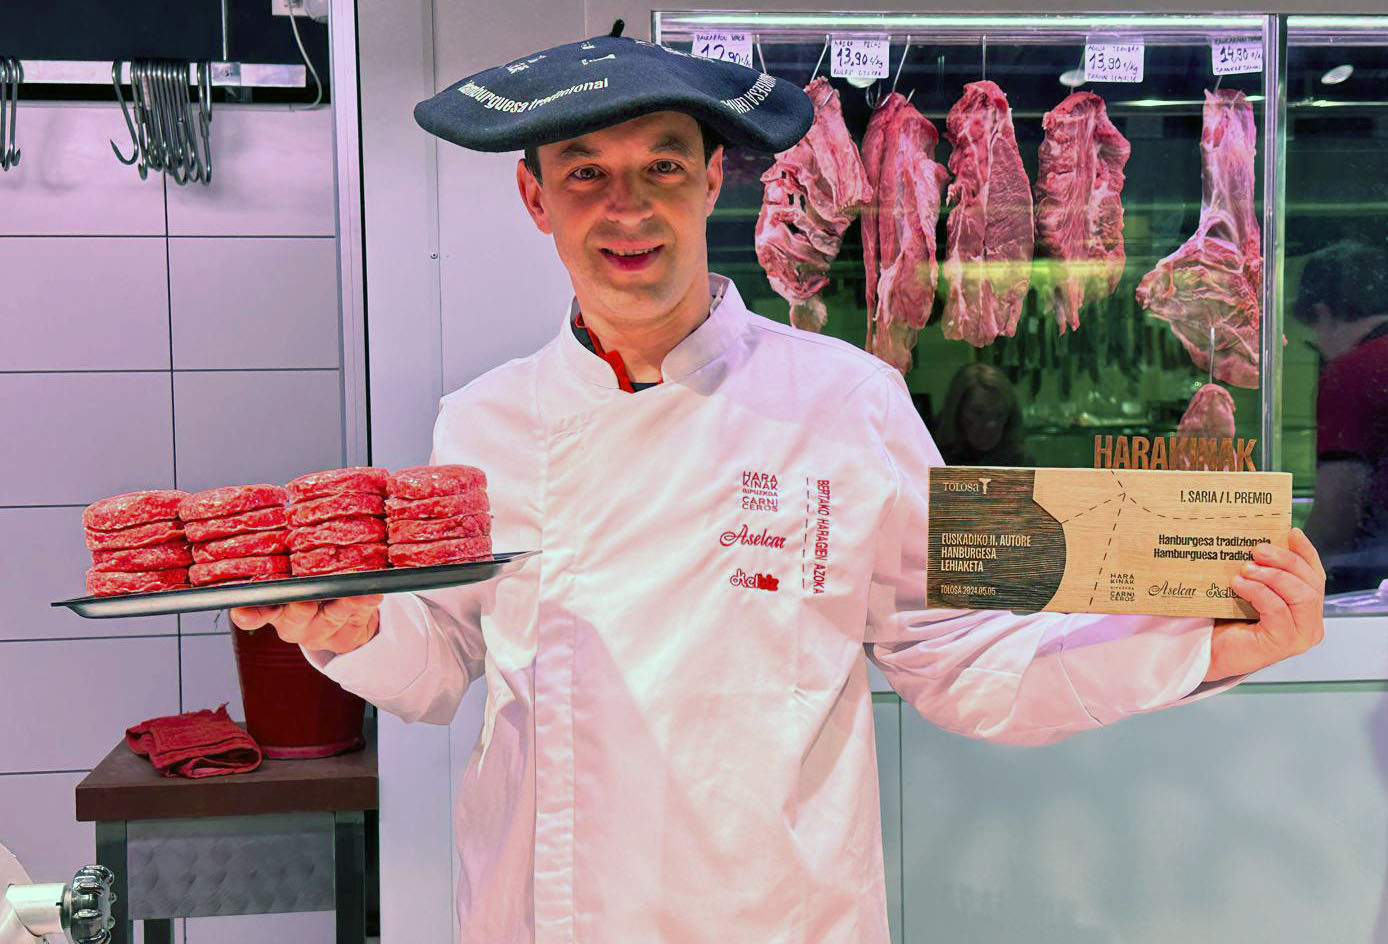 La hamburguesa campeona de Euskadi es de ternera vitoriana